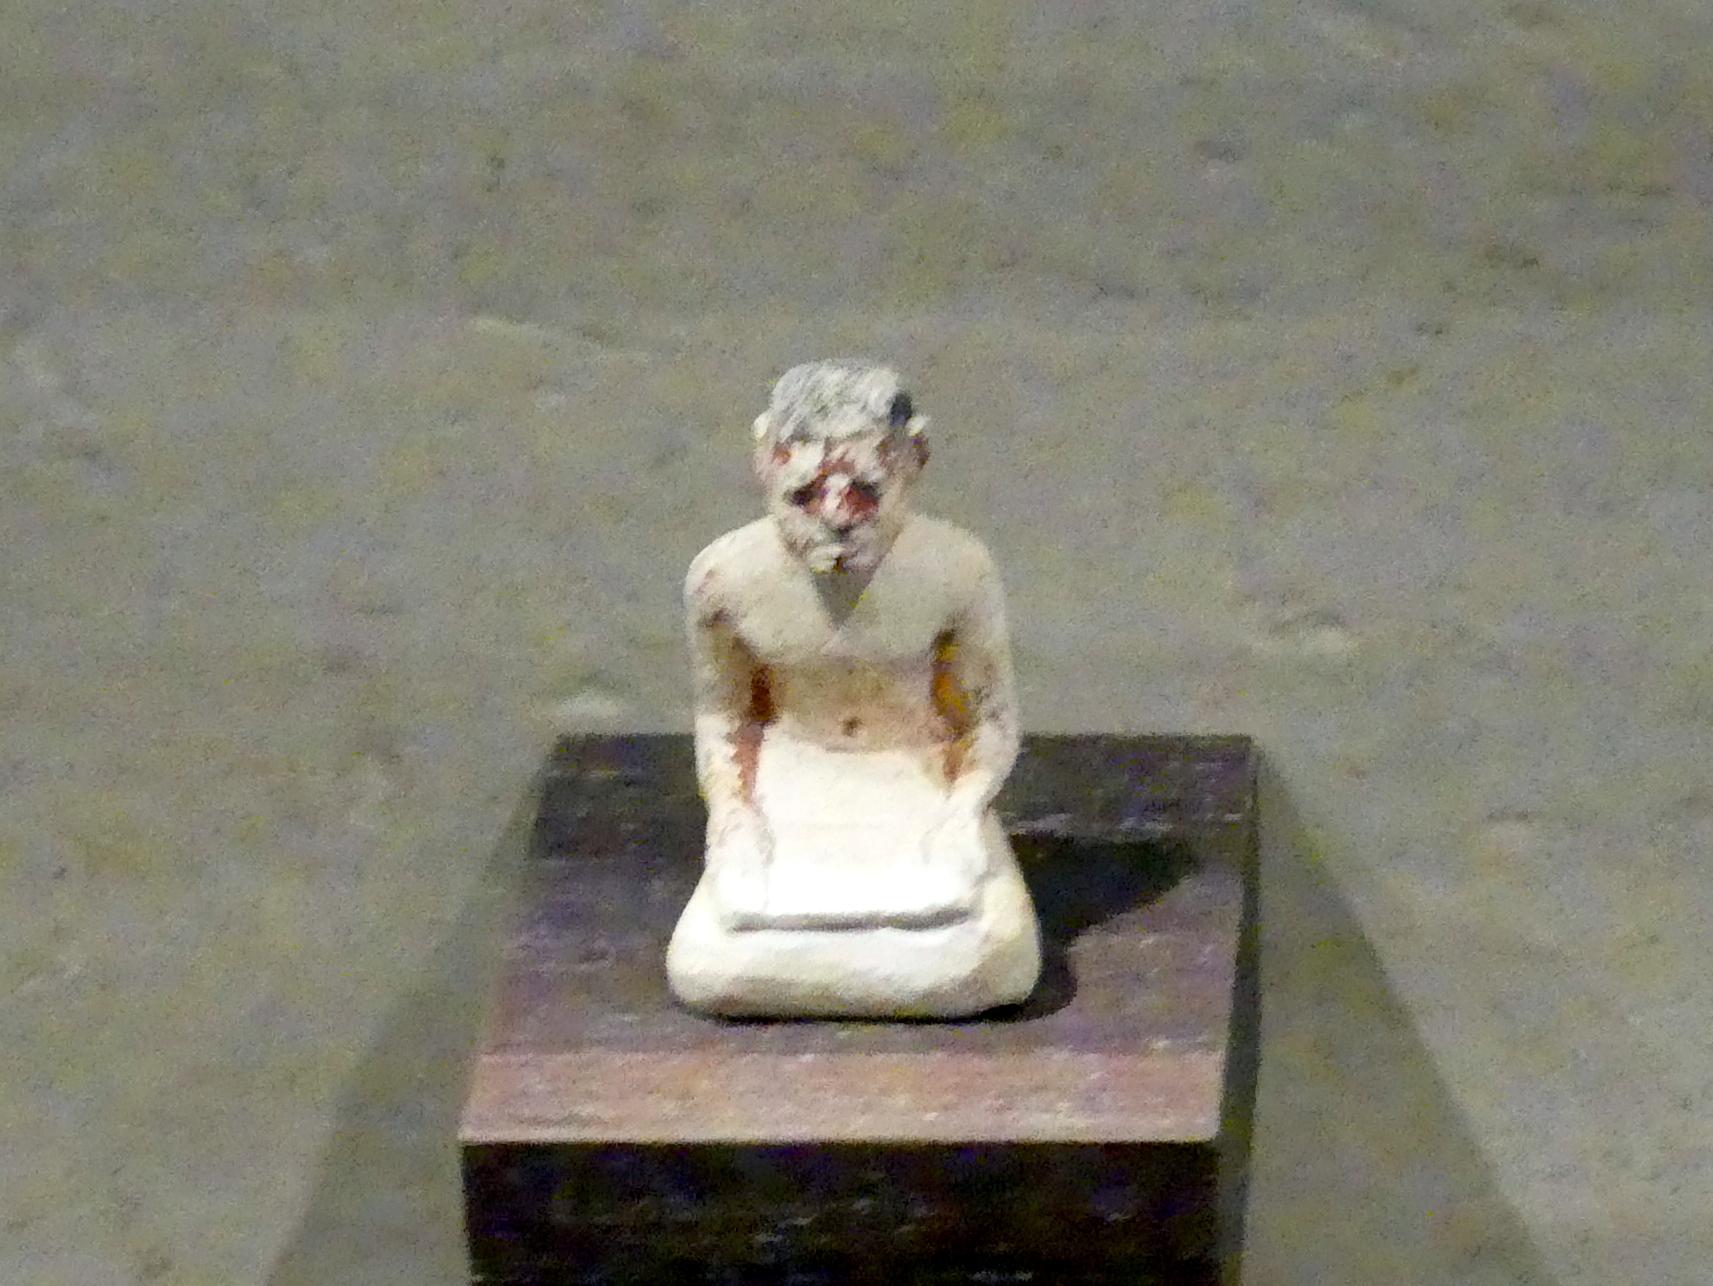 Statuette eines Schreibers, 12. Dynastie, 1678 - 1634 v. Chr., 1900 - 1850 v. Chr., Bild 1/2